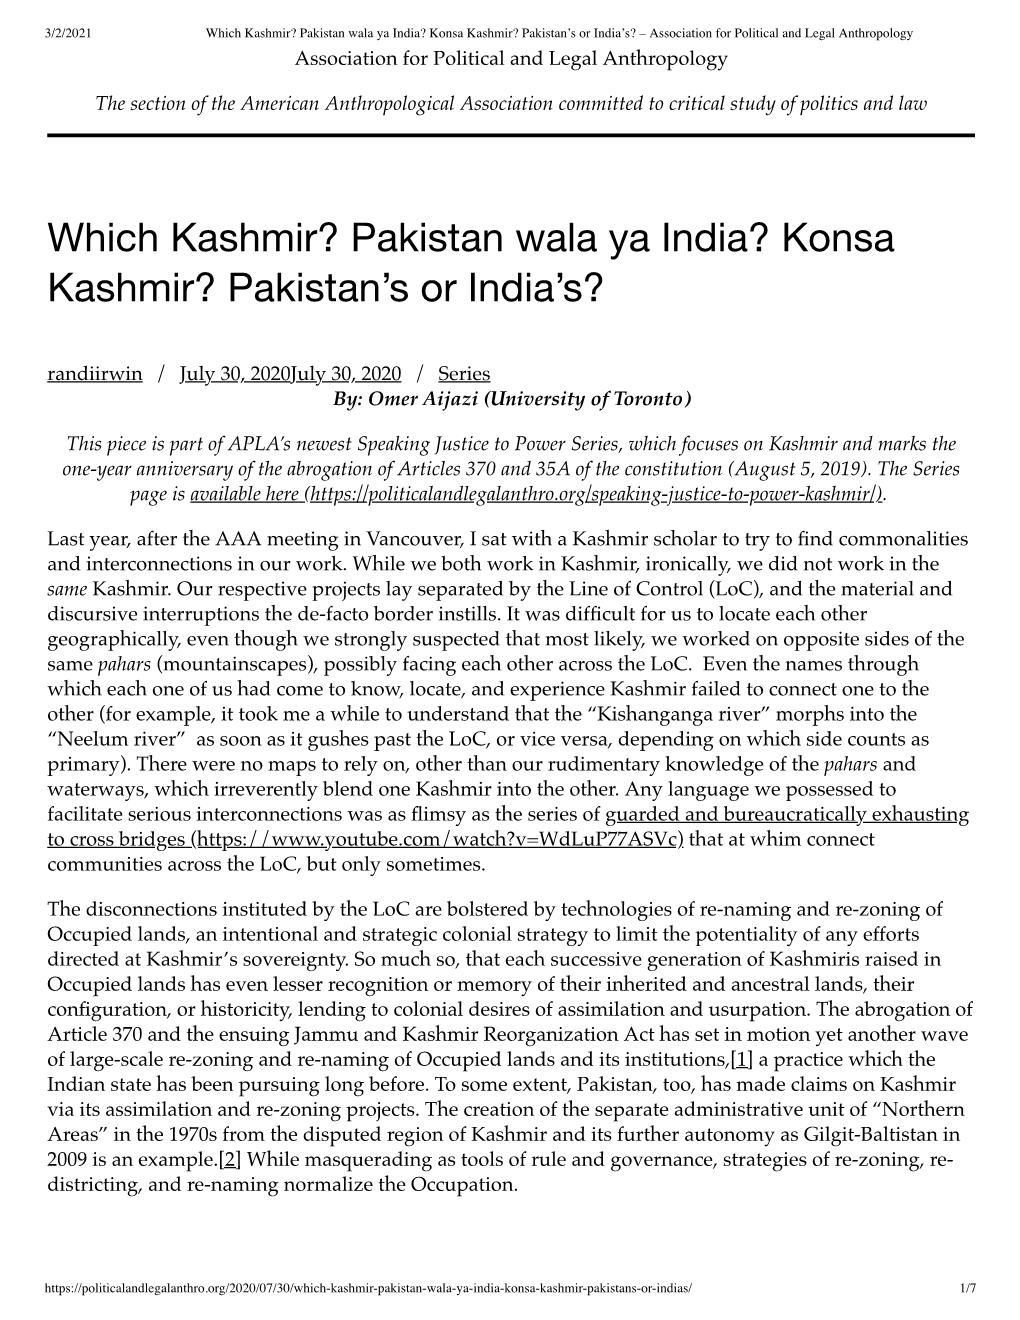 Which Kashmir? Pakistan Wala Ya India?